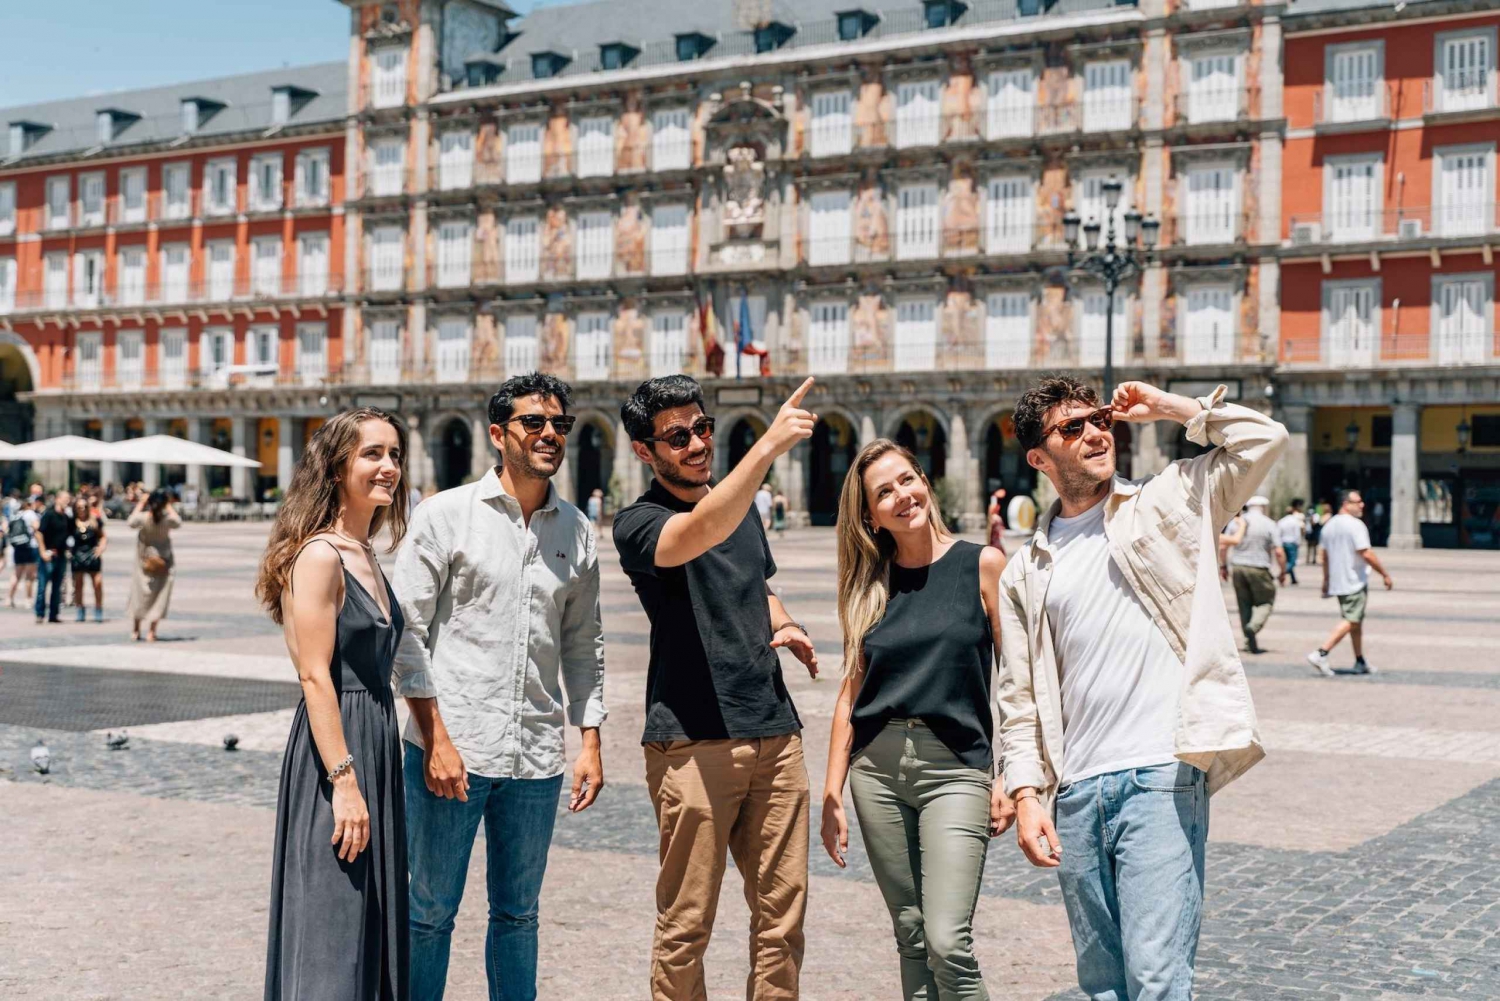 Visita guiada privada a Madrid: explore a cidade velha com um especialista